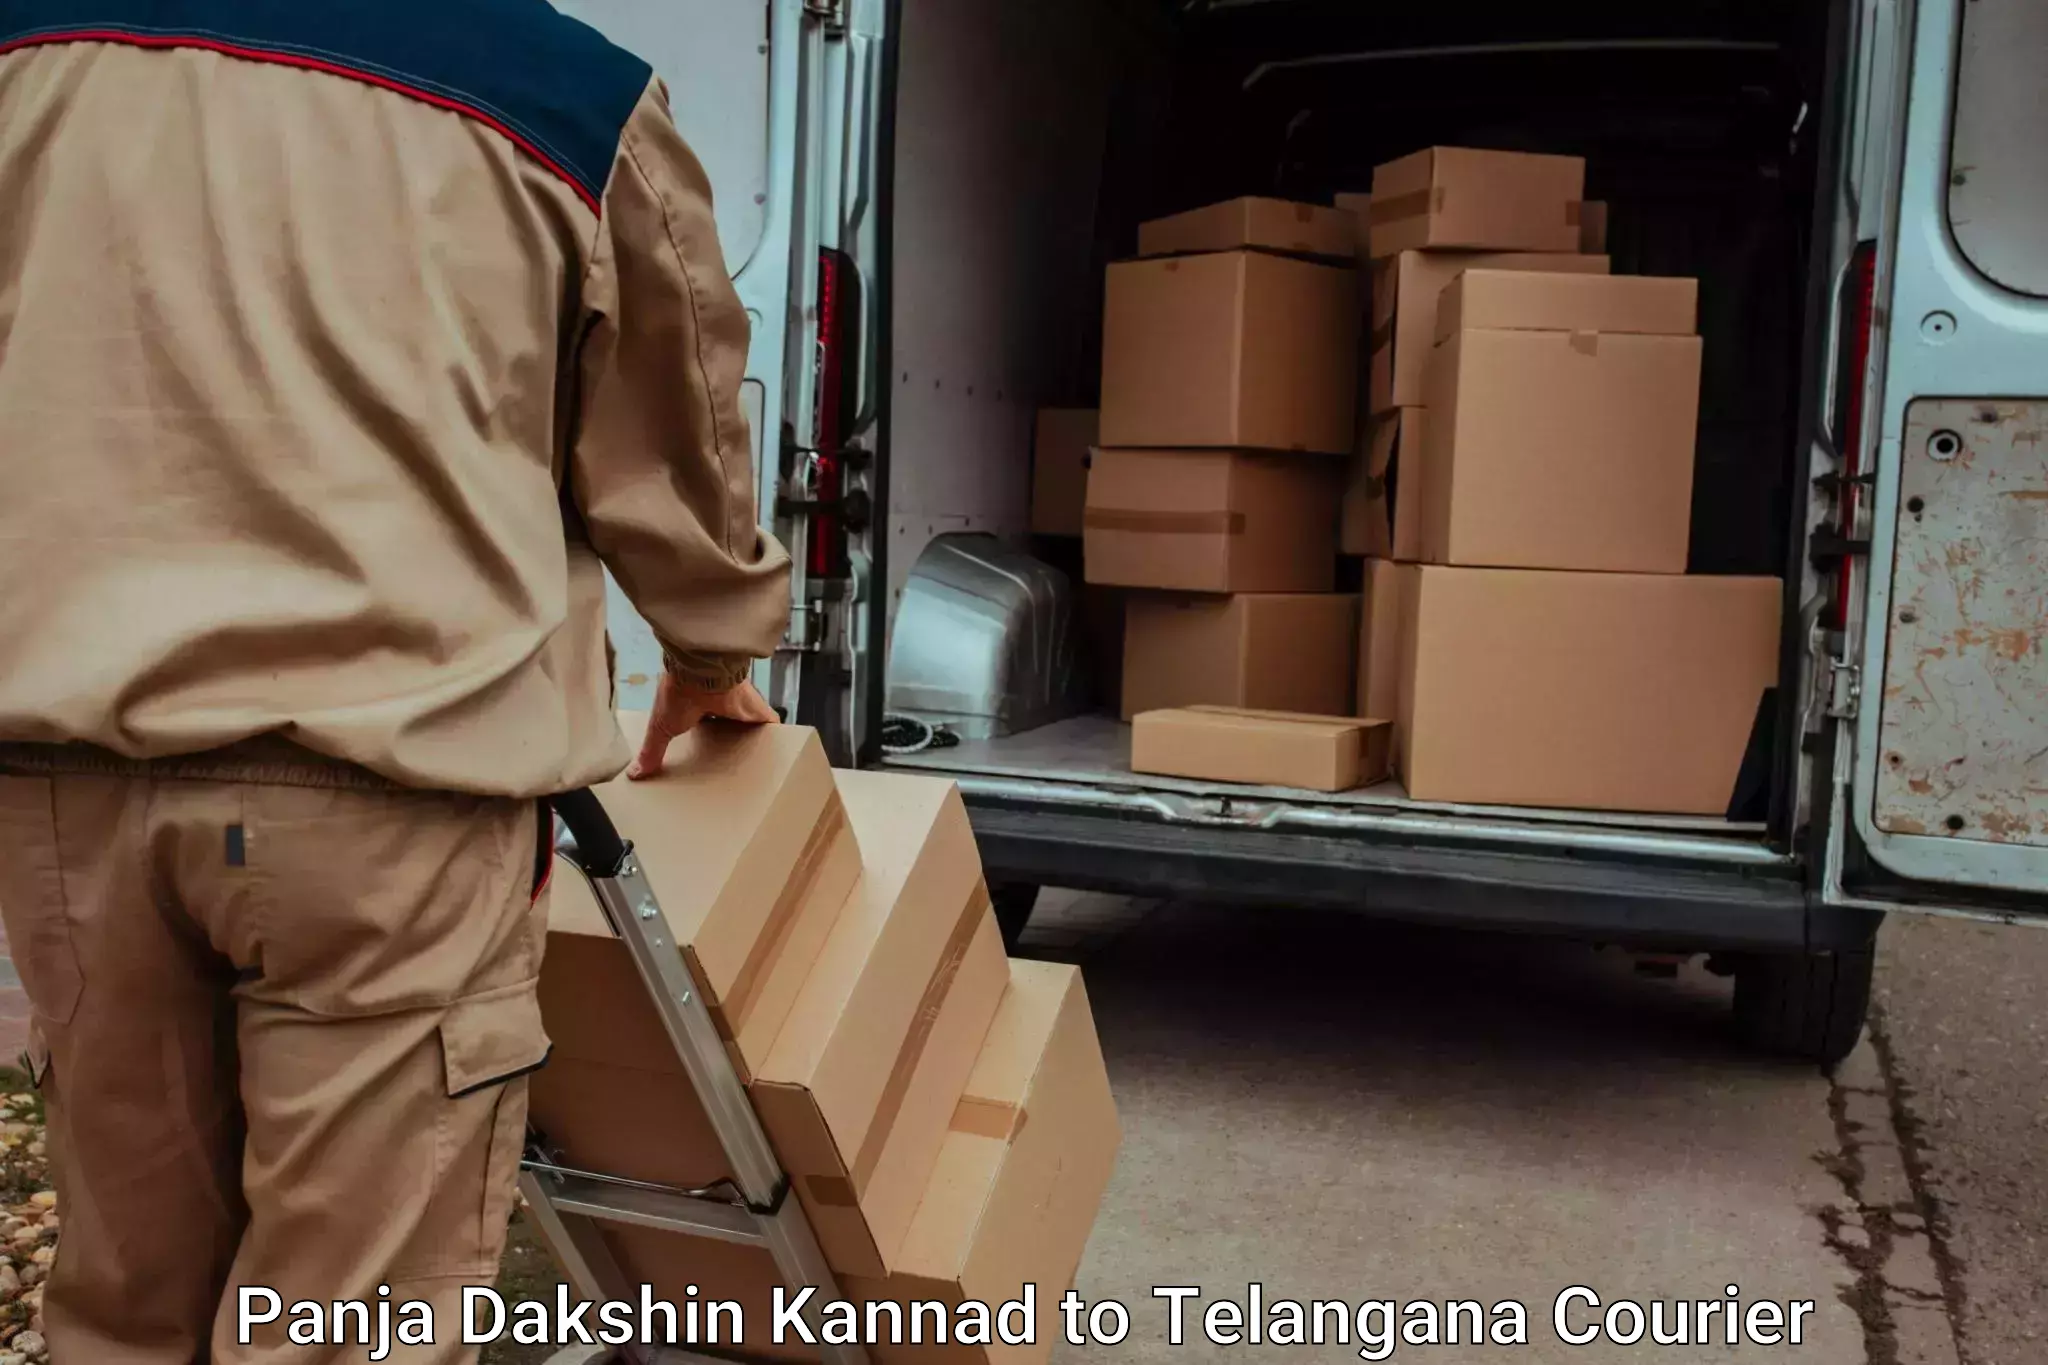 Luggage transfer service Panja Dakshin Kannad to Madhavaram